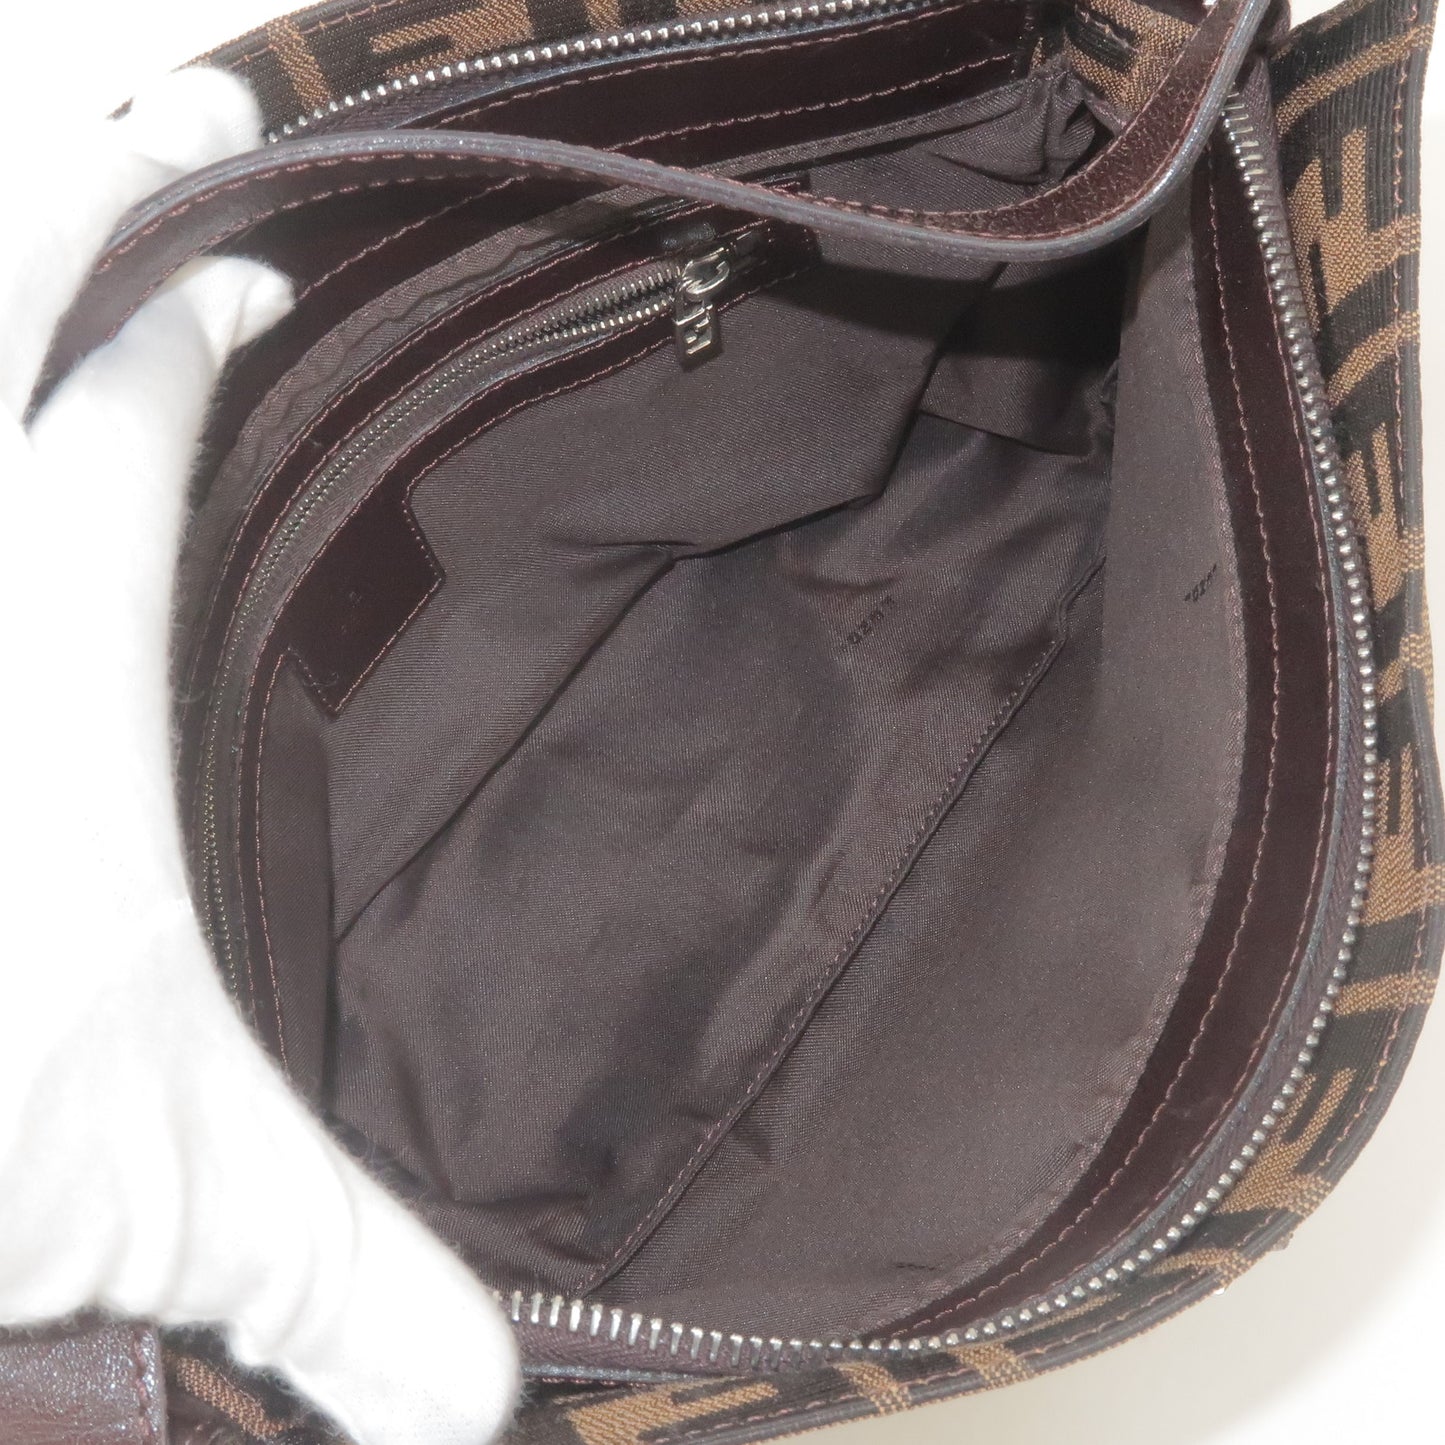 FENDI Zucca Print Canvas Leather Shoulder Bag Brown Black 26566